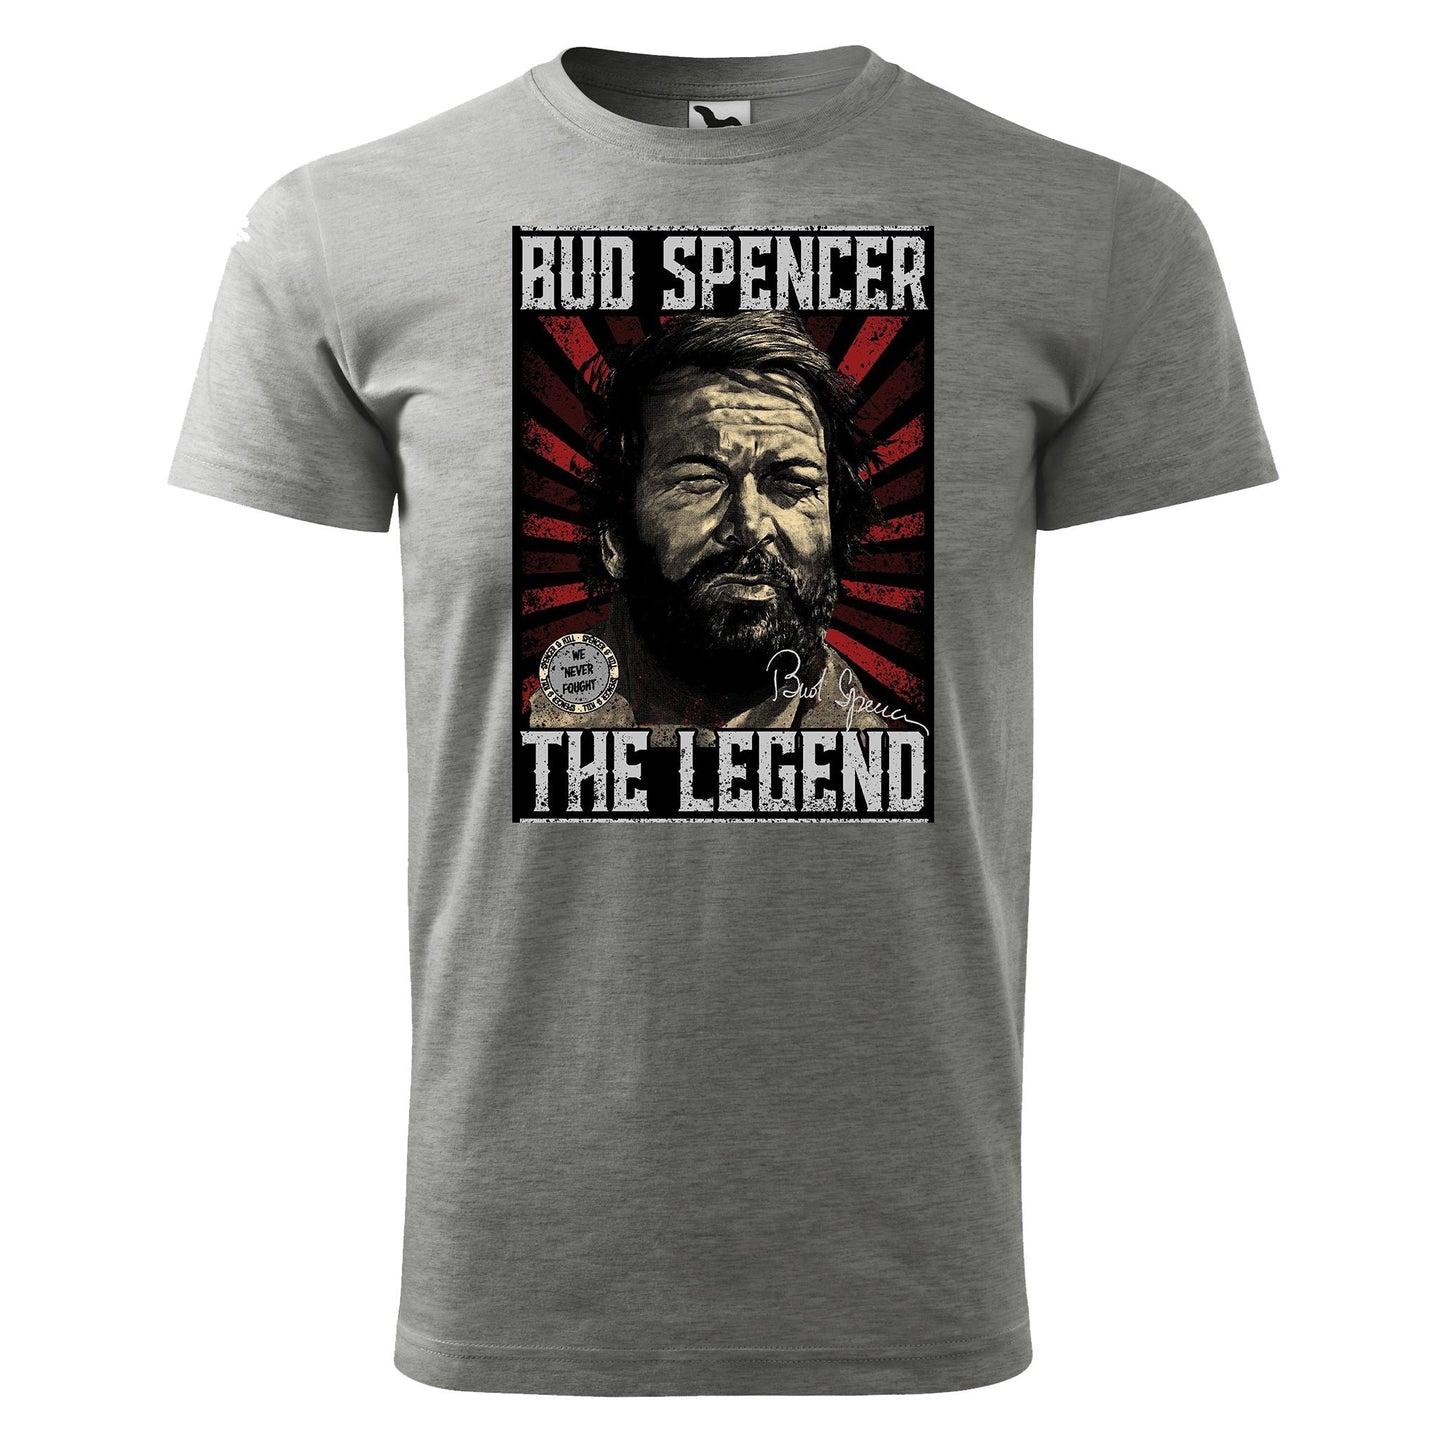 Bud spencer t-shirt - rvdesignprint